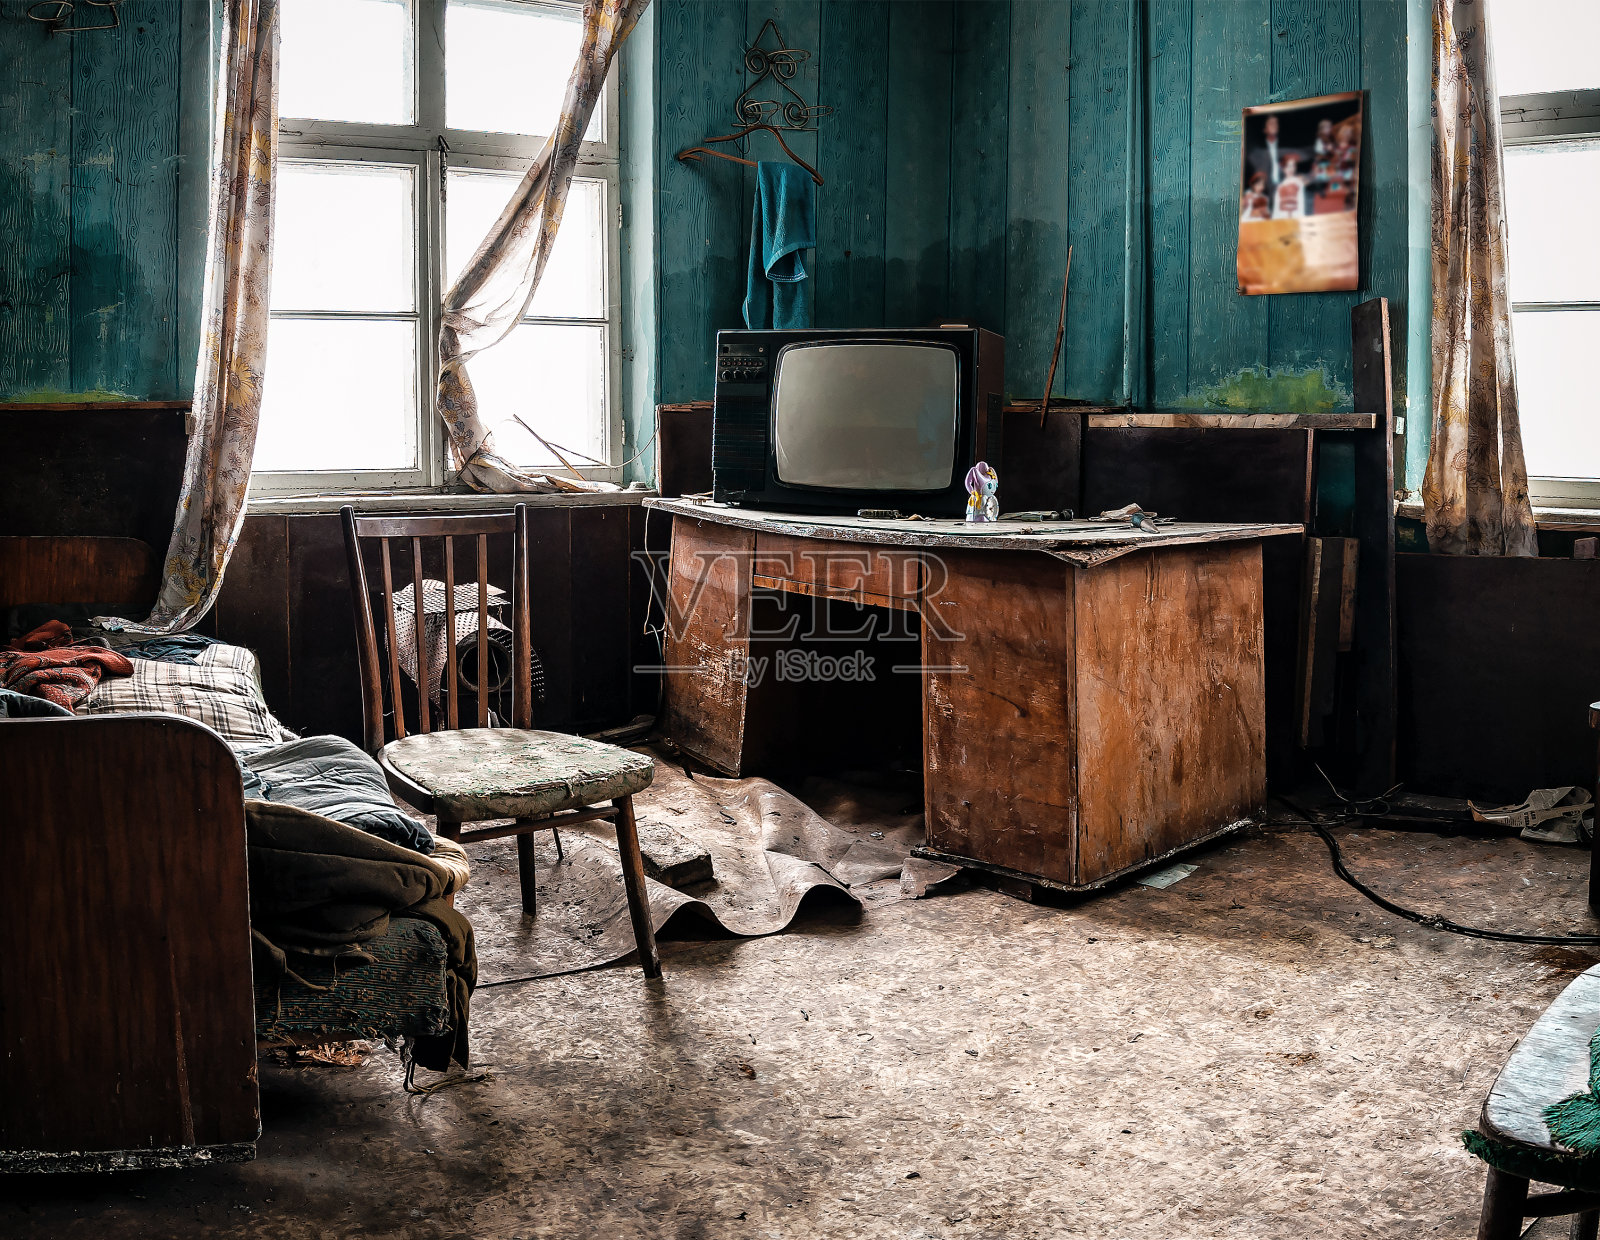 废弃房间里的旧电视和各种垃圾照片摄影图片